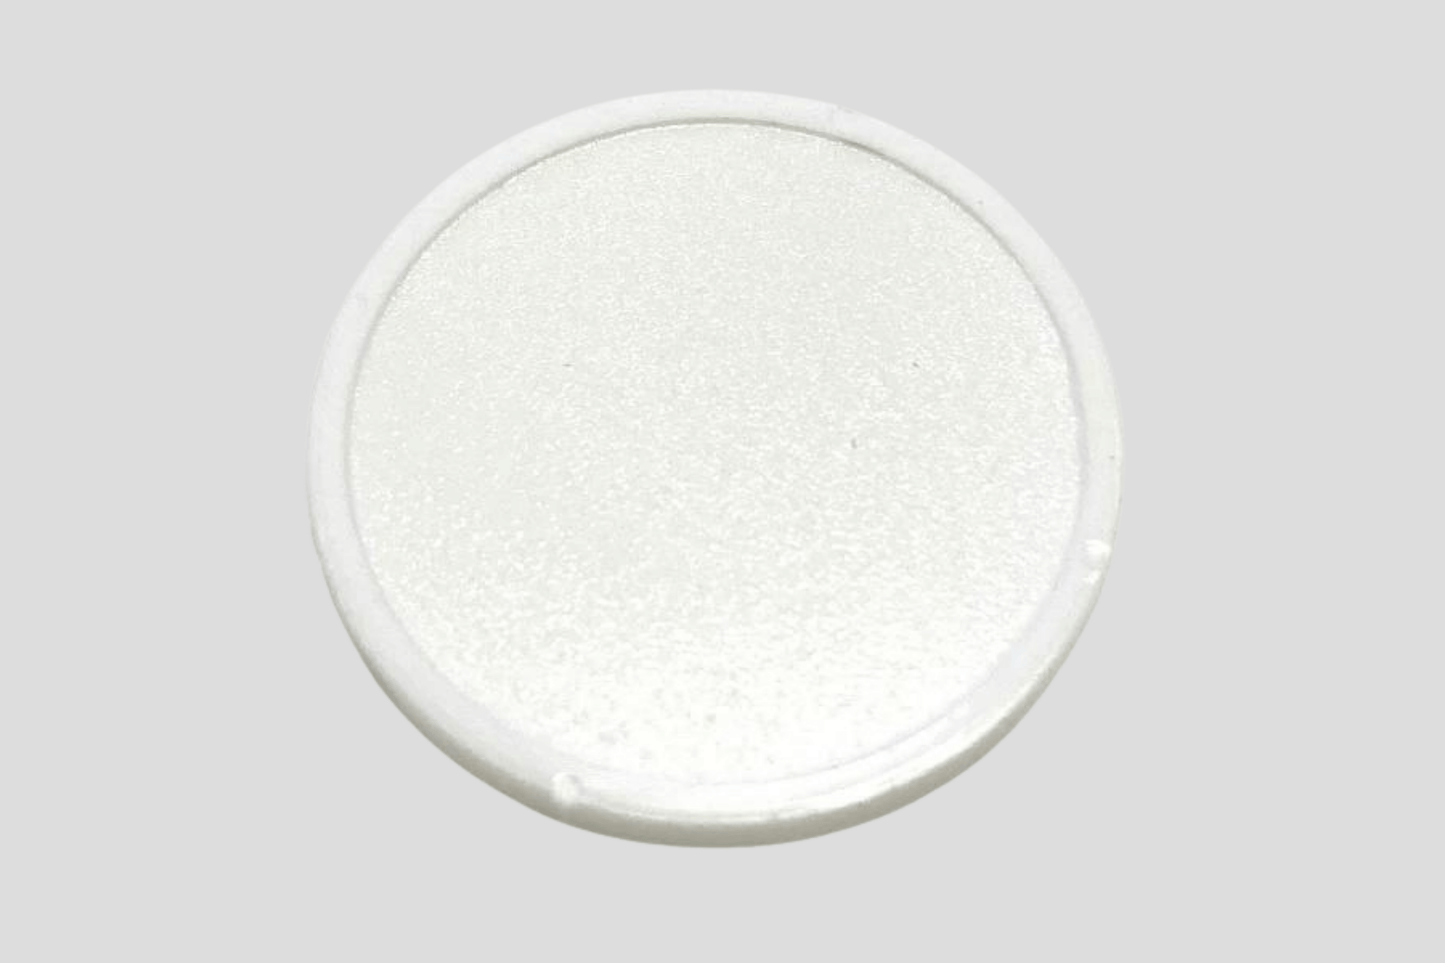 En hvit oval knapp på en grå overflate, laget av plast, kalt JM Band NOs "Poletter plast preget På lager".